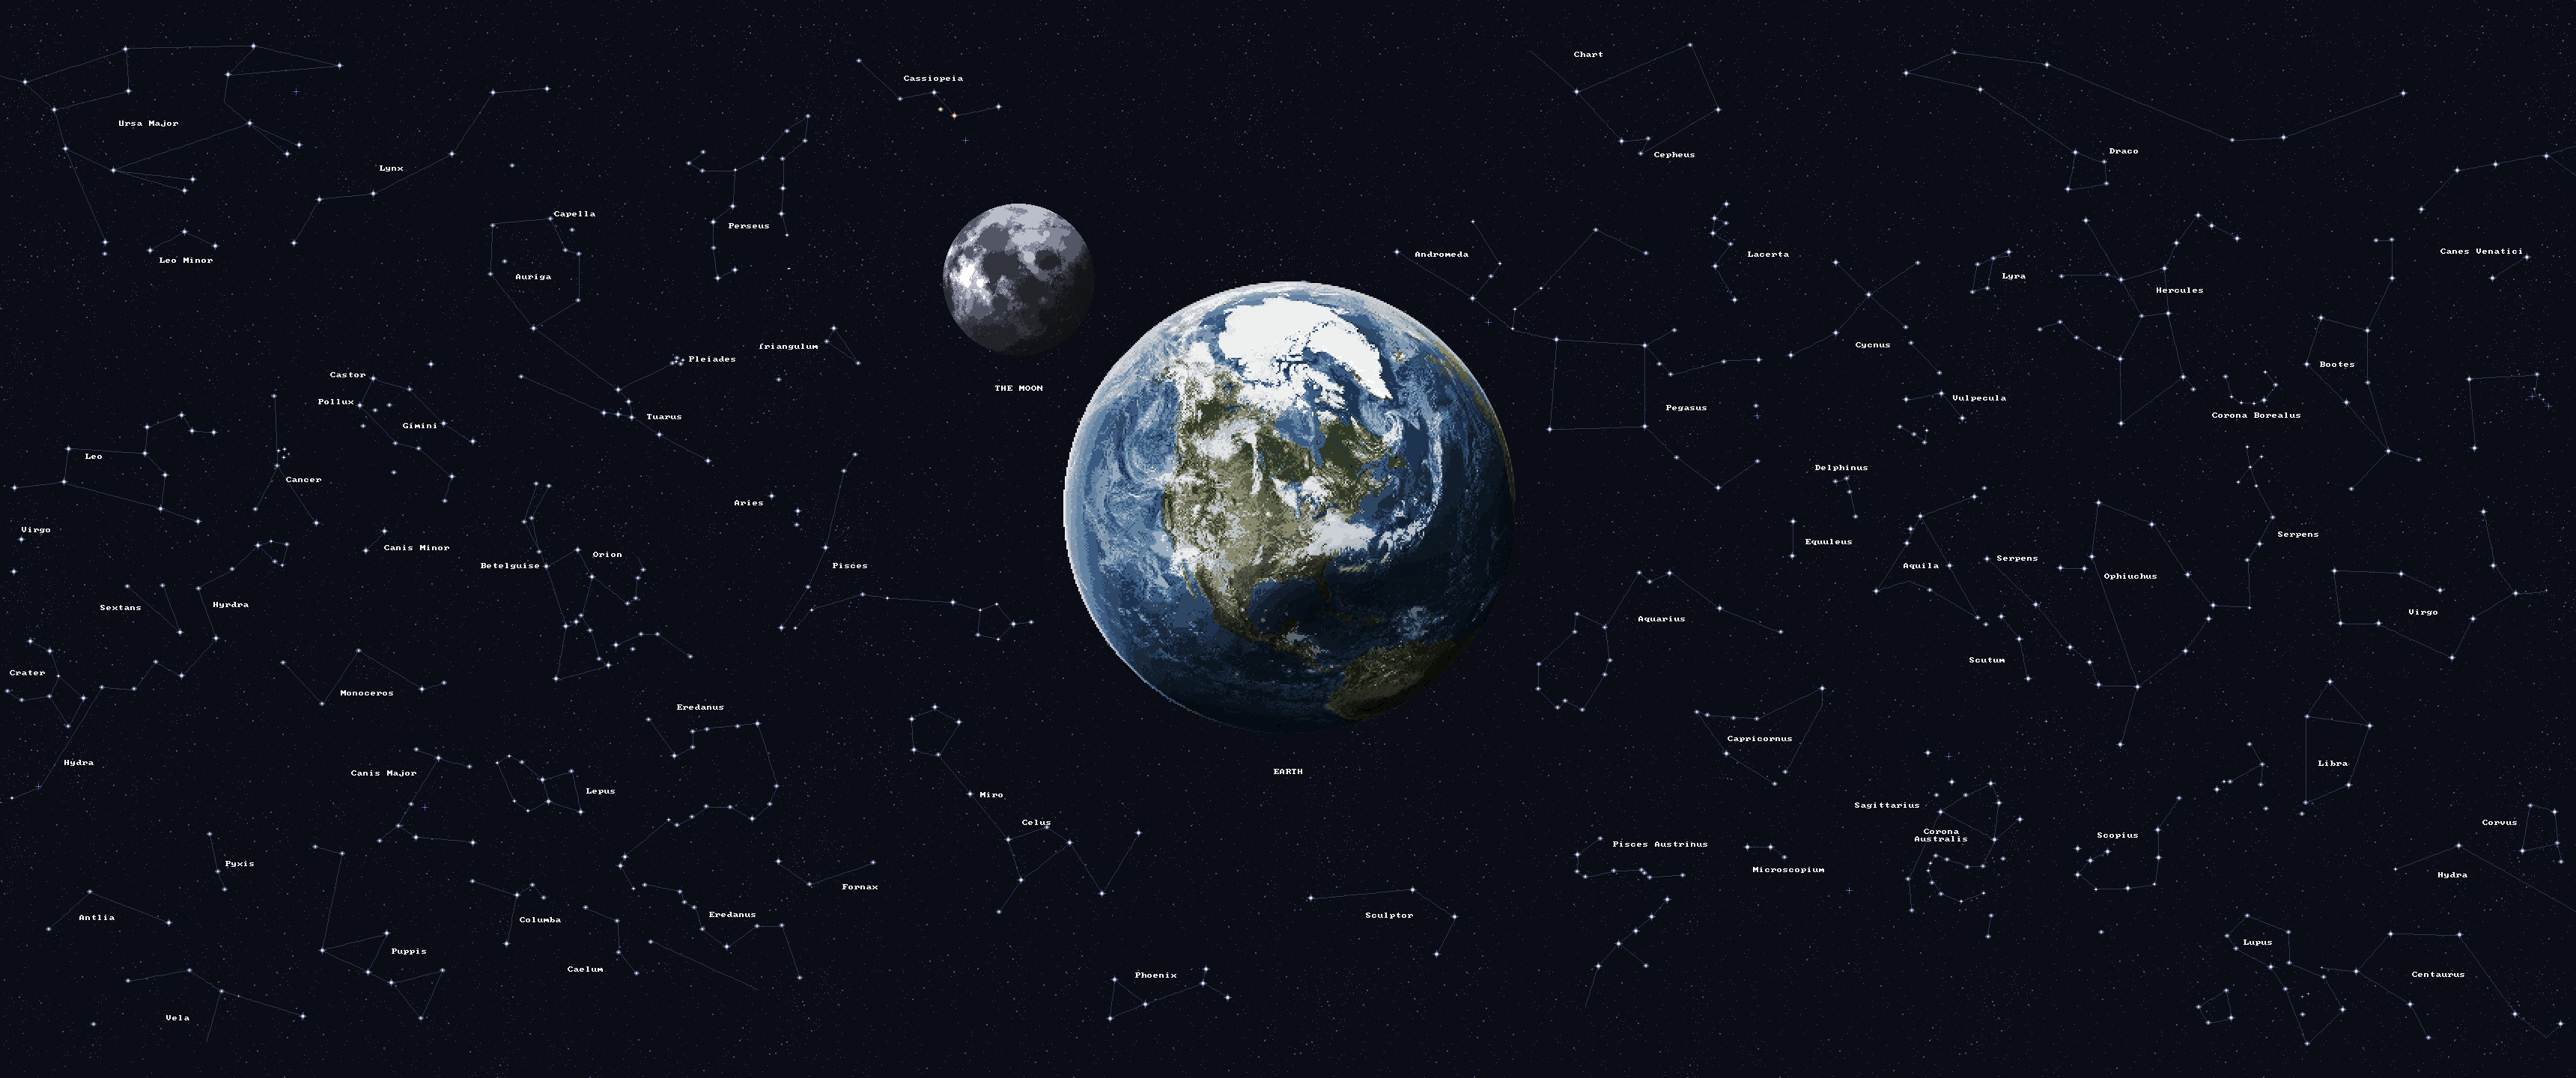 General 3440x1440 8-bit pixel art Earth Moon stars space ultrawide